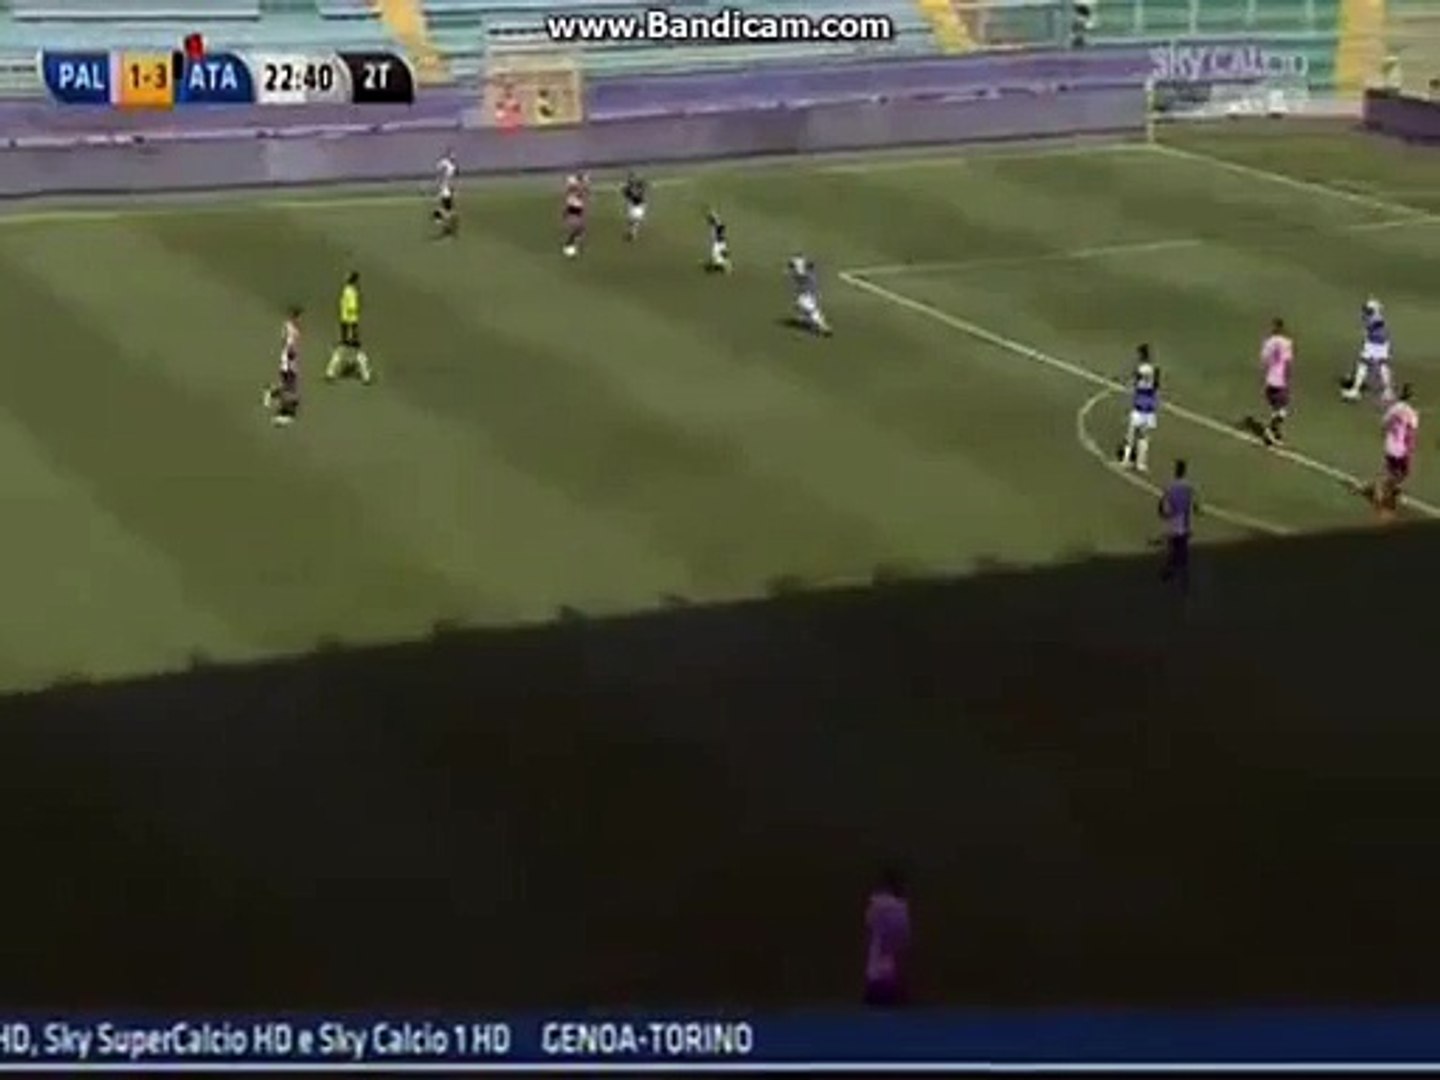 Palermo 2-3 Atalanta All Goals & Highlights - video Dailymotion